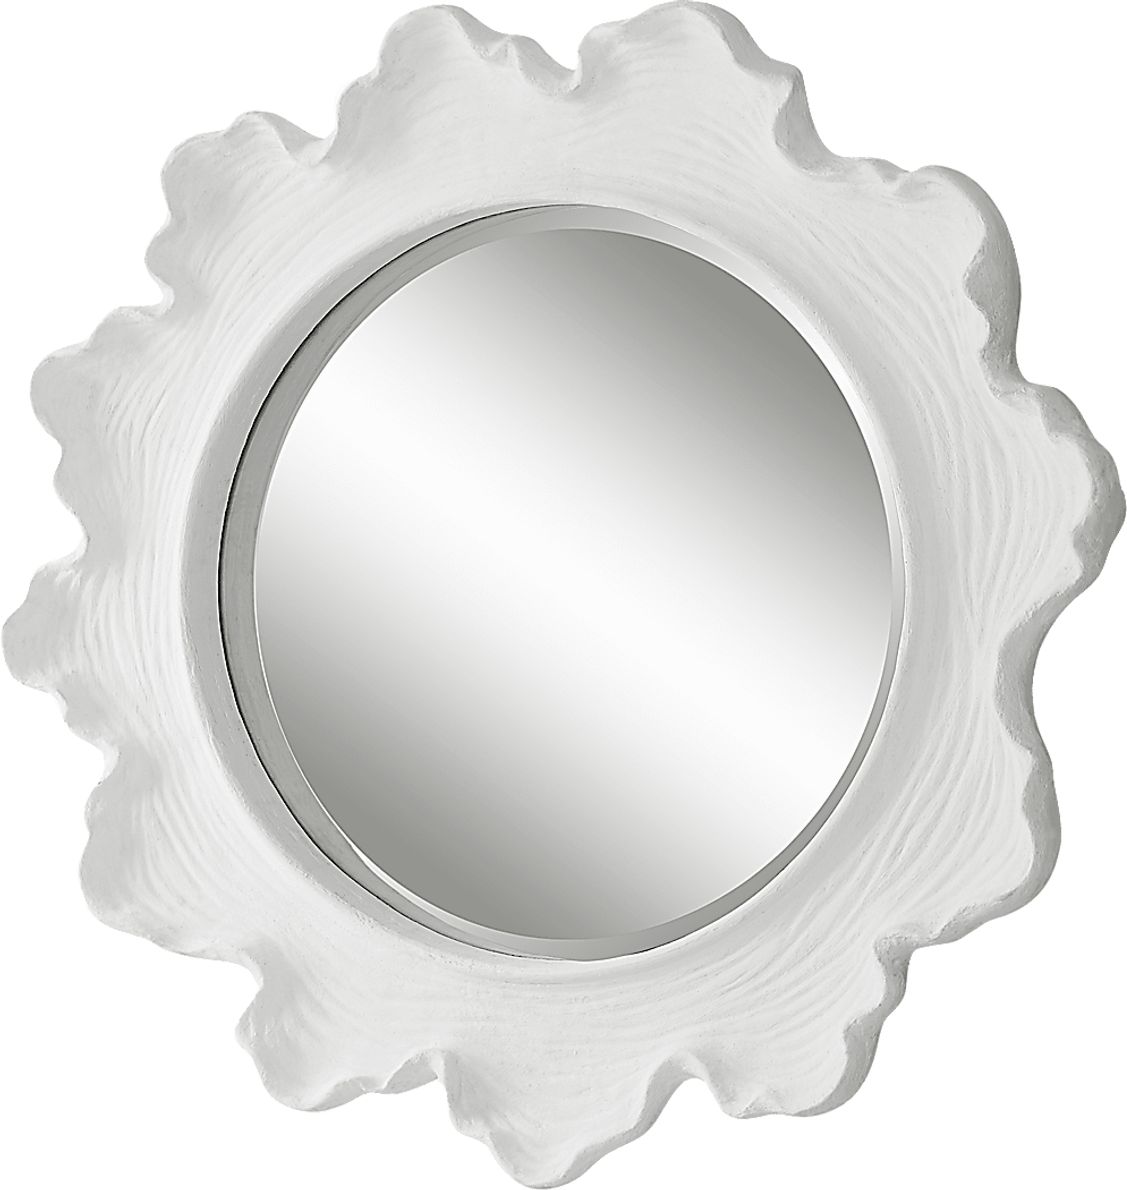 Walldron White Wall Mirror